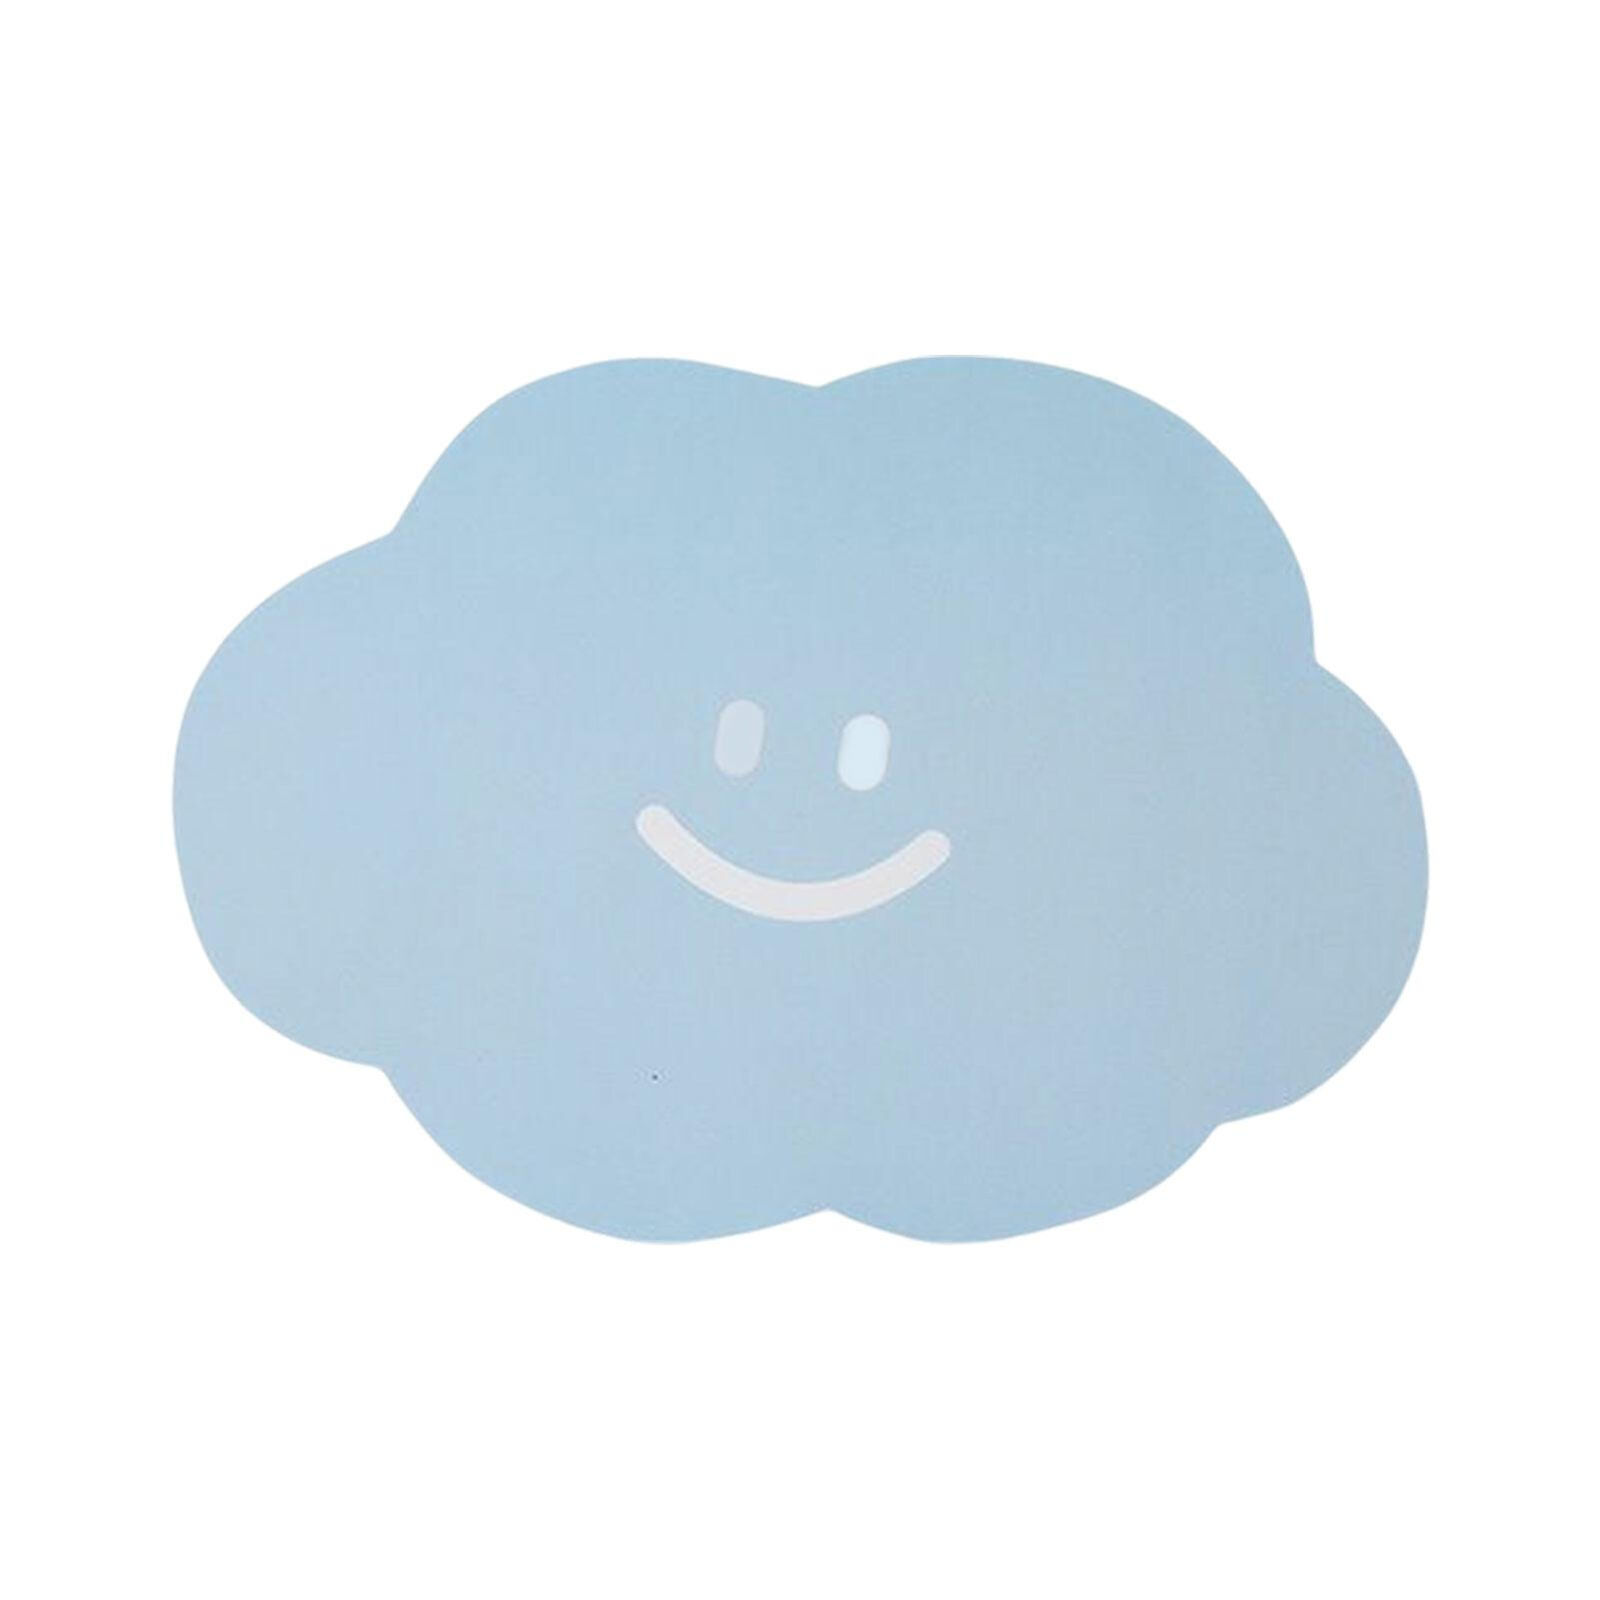 2Pcs Cute Cloud Shaped Mouse Pads Non-Slip Rubber Base Waterproof PVC Mouse Mat